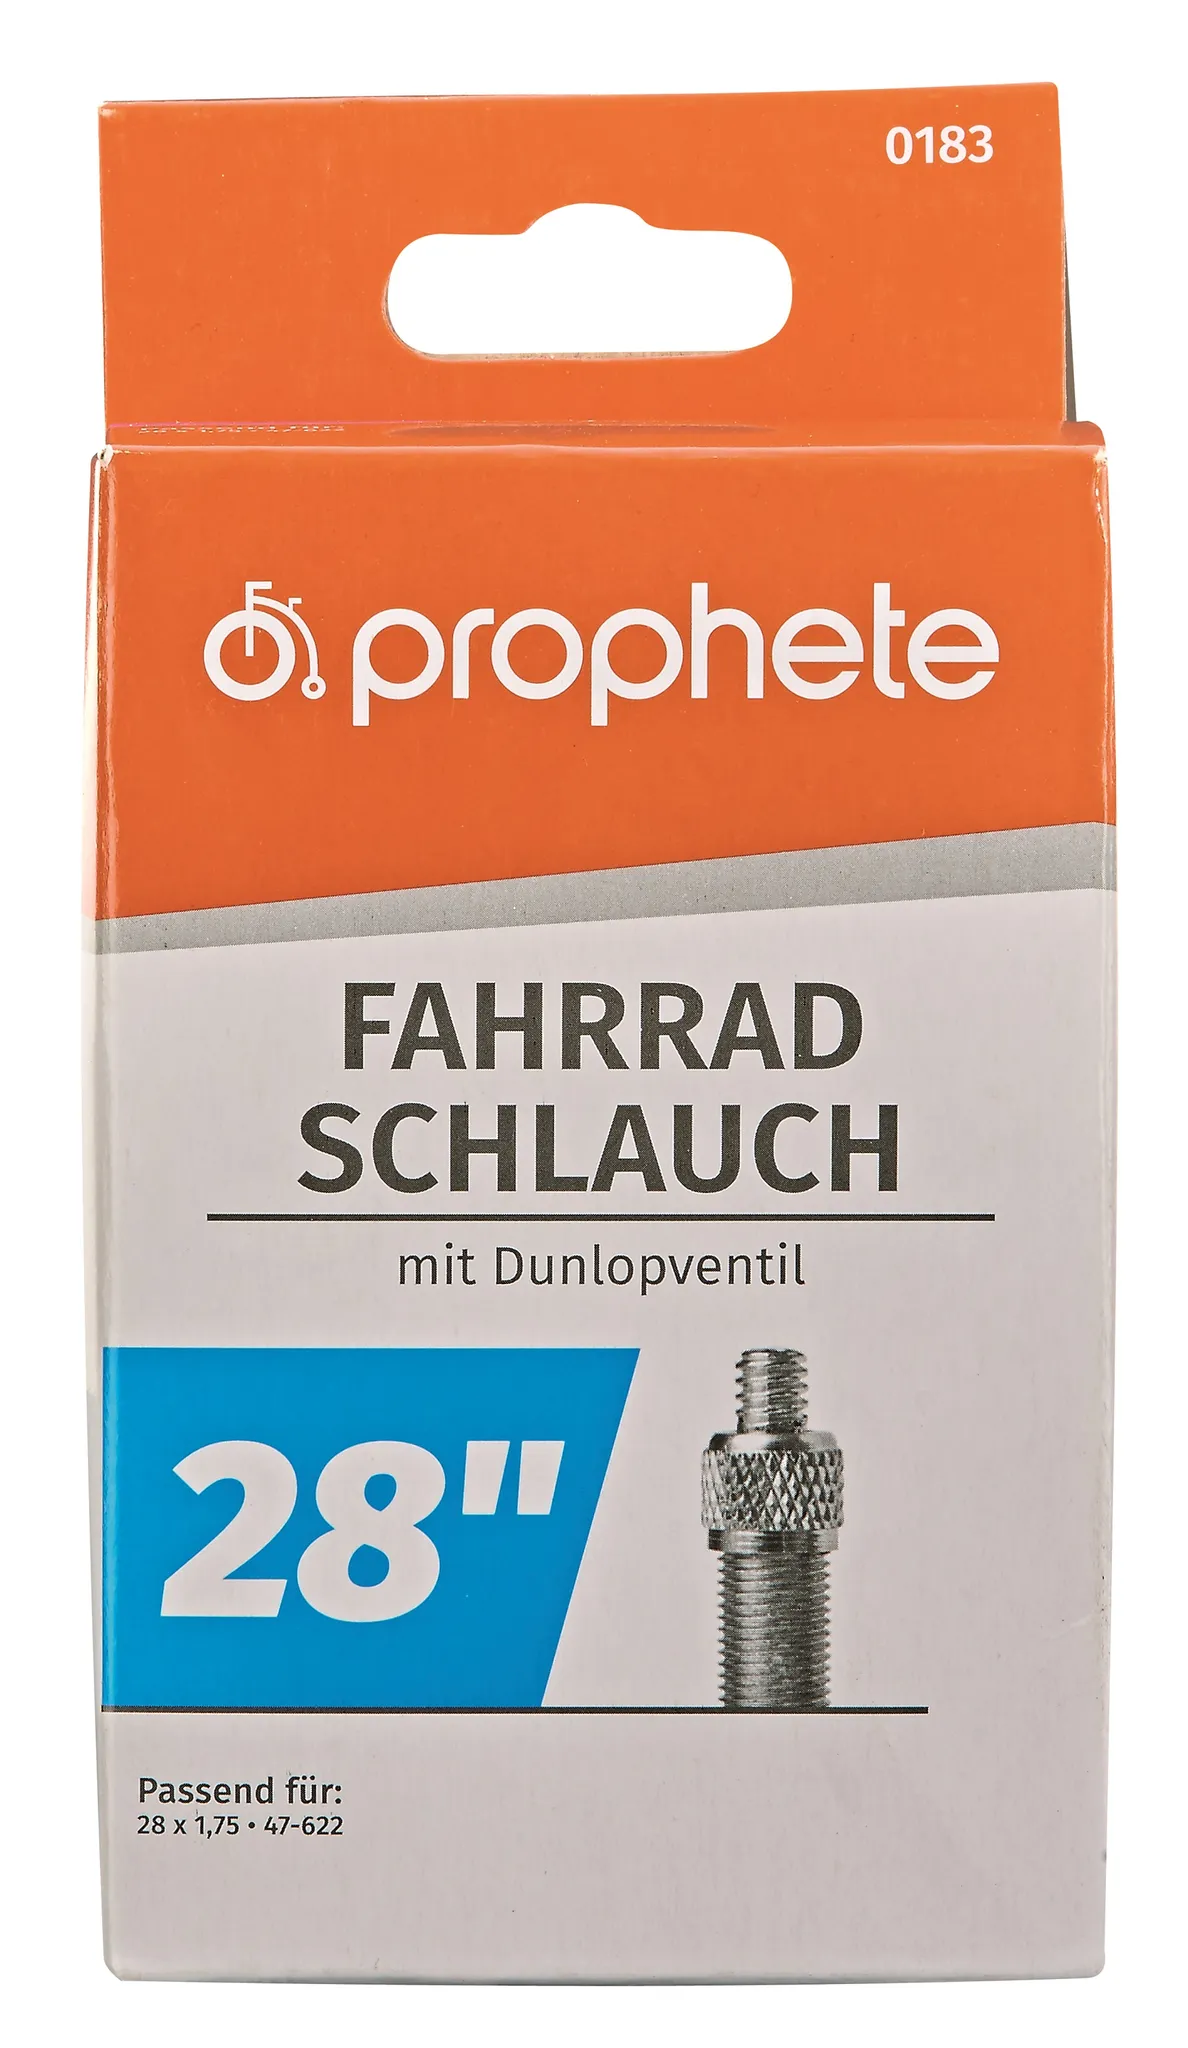 Prophete 0183 2 1,75 x 28 - x Fahrradschlauch